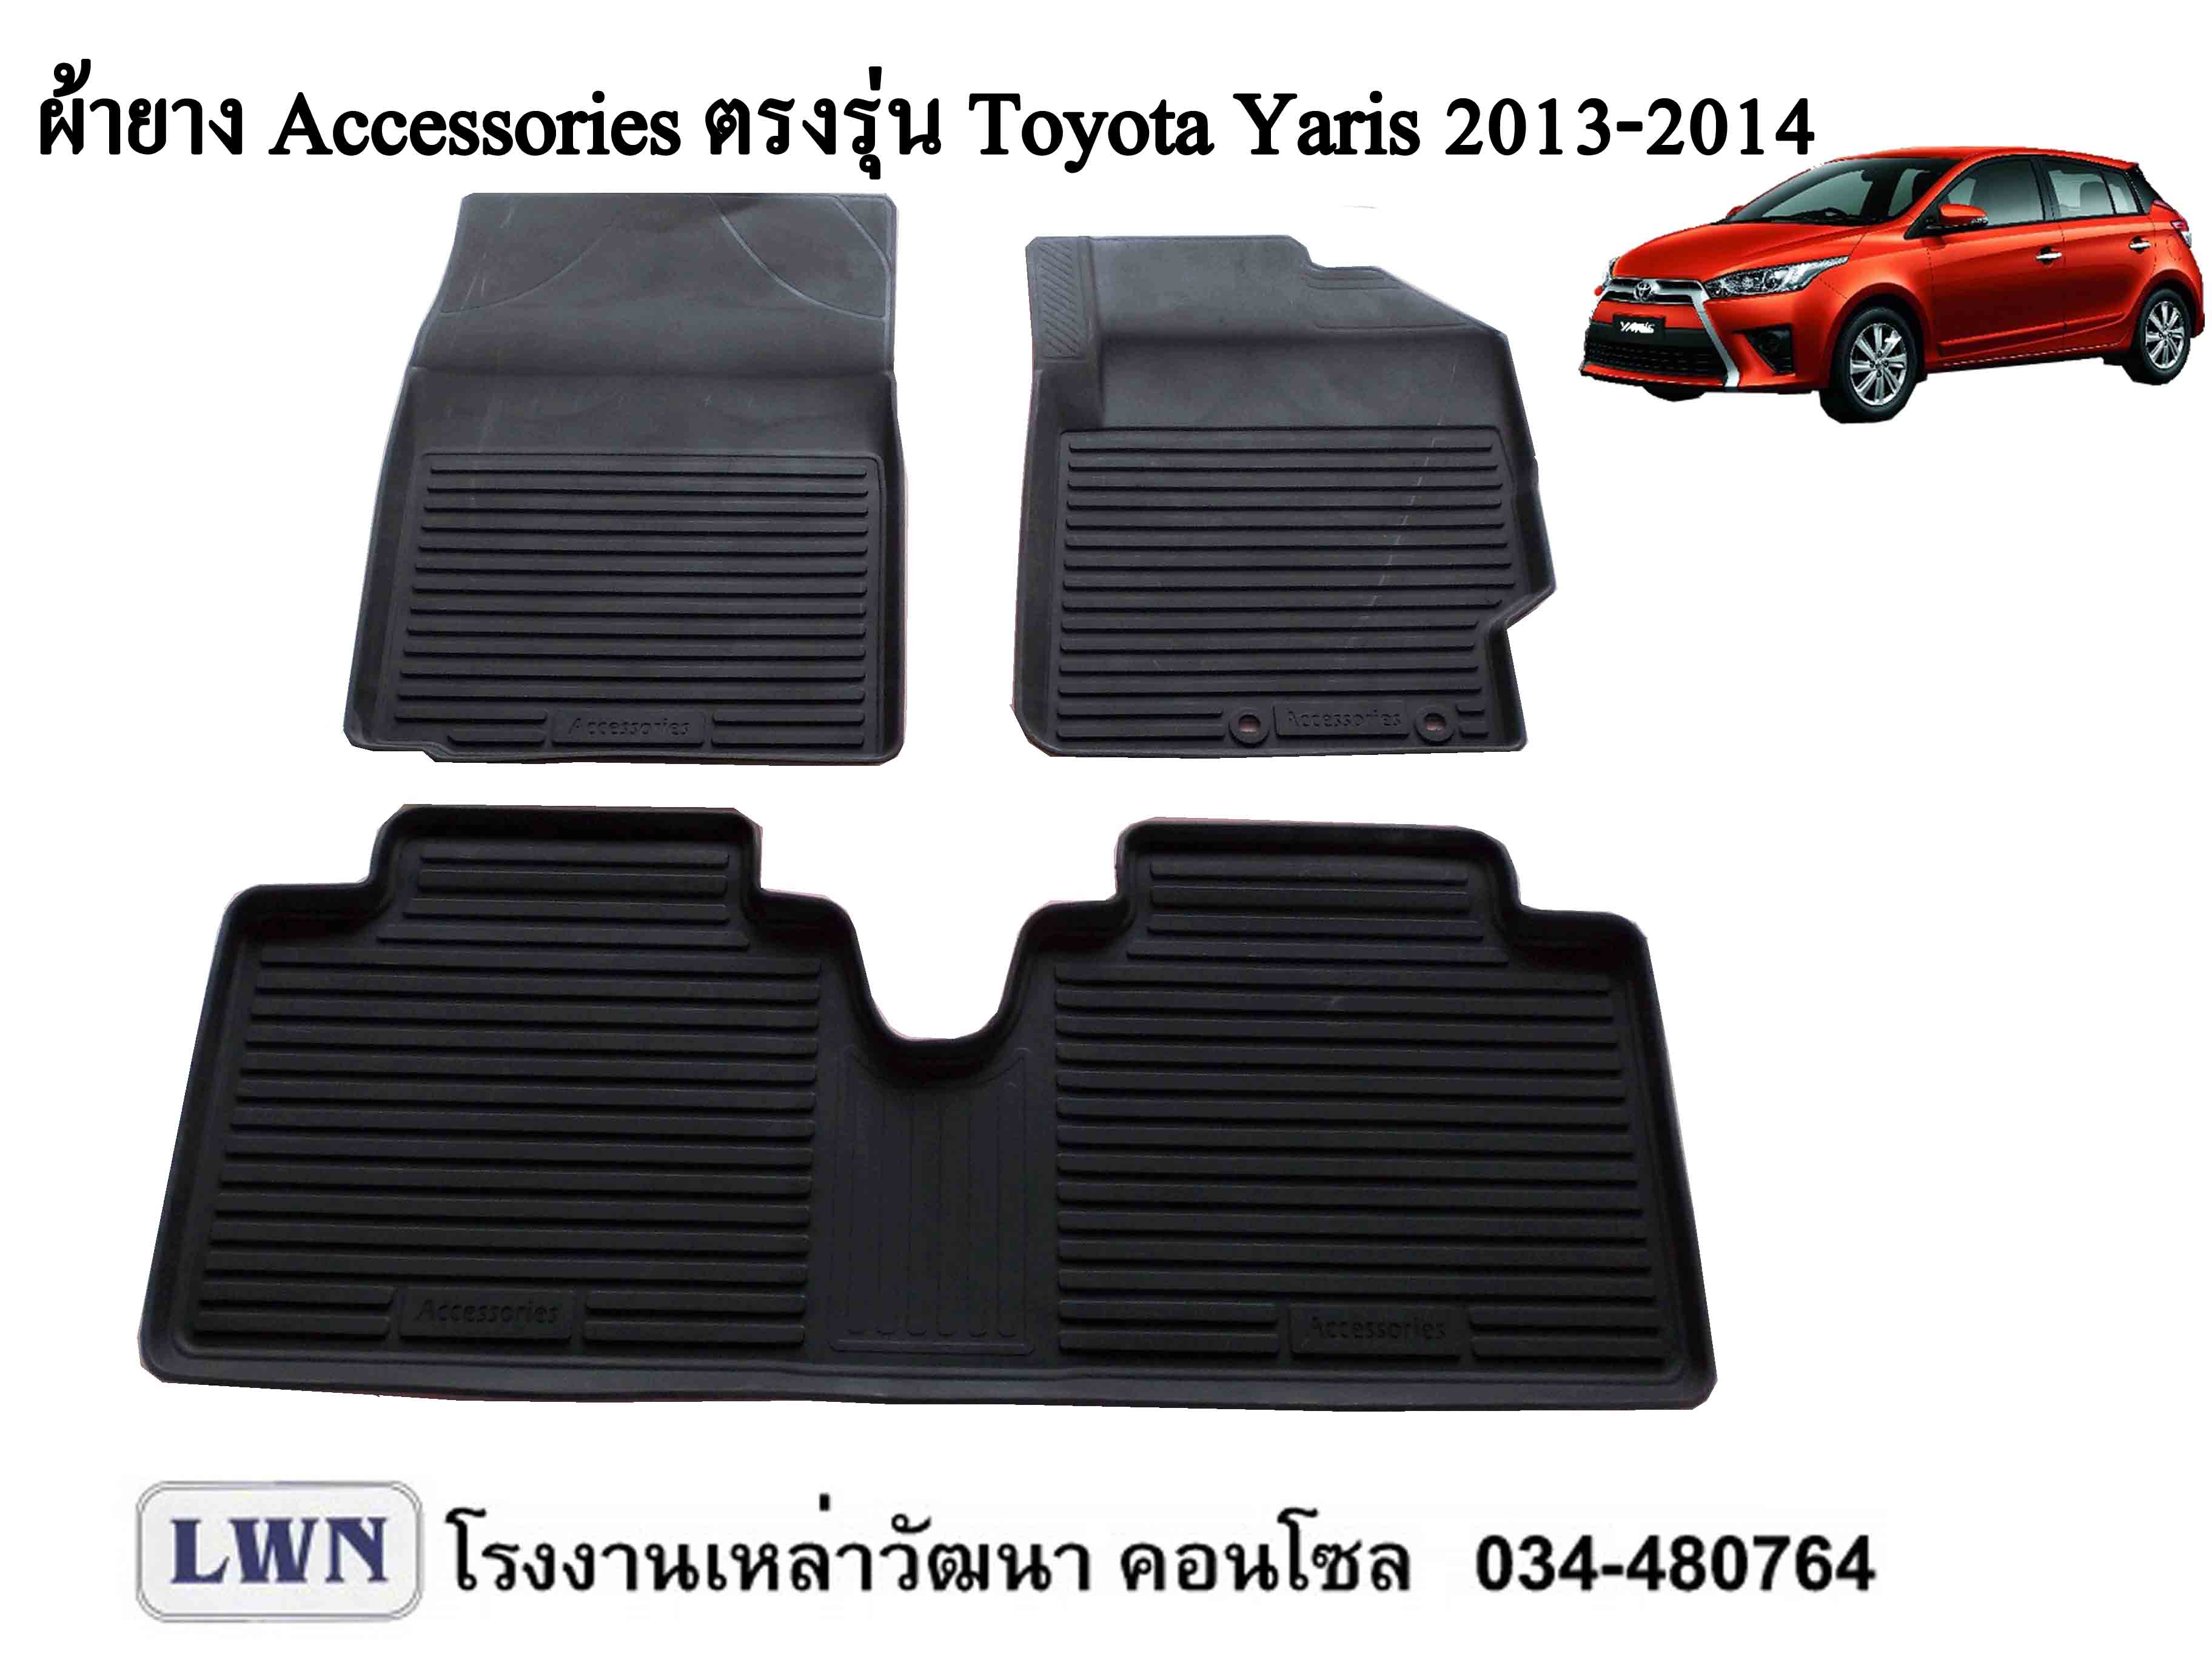 ผ้ายางปูพื้น Toyota Yaris 2013-2017